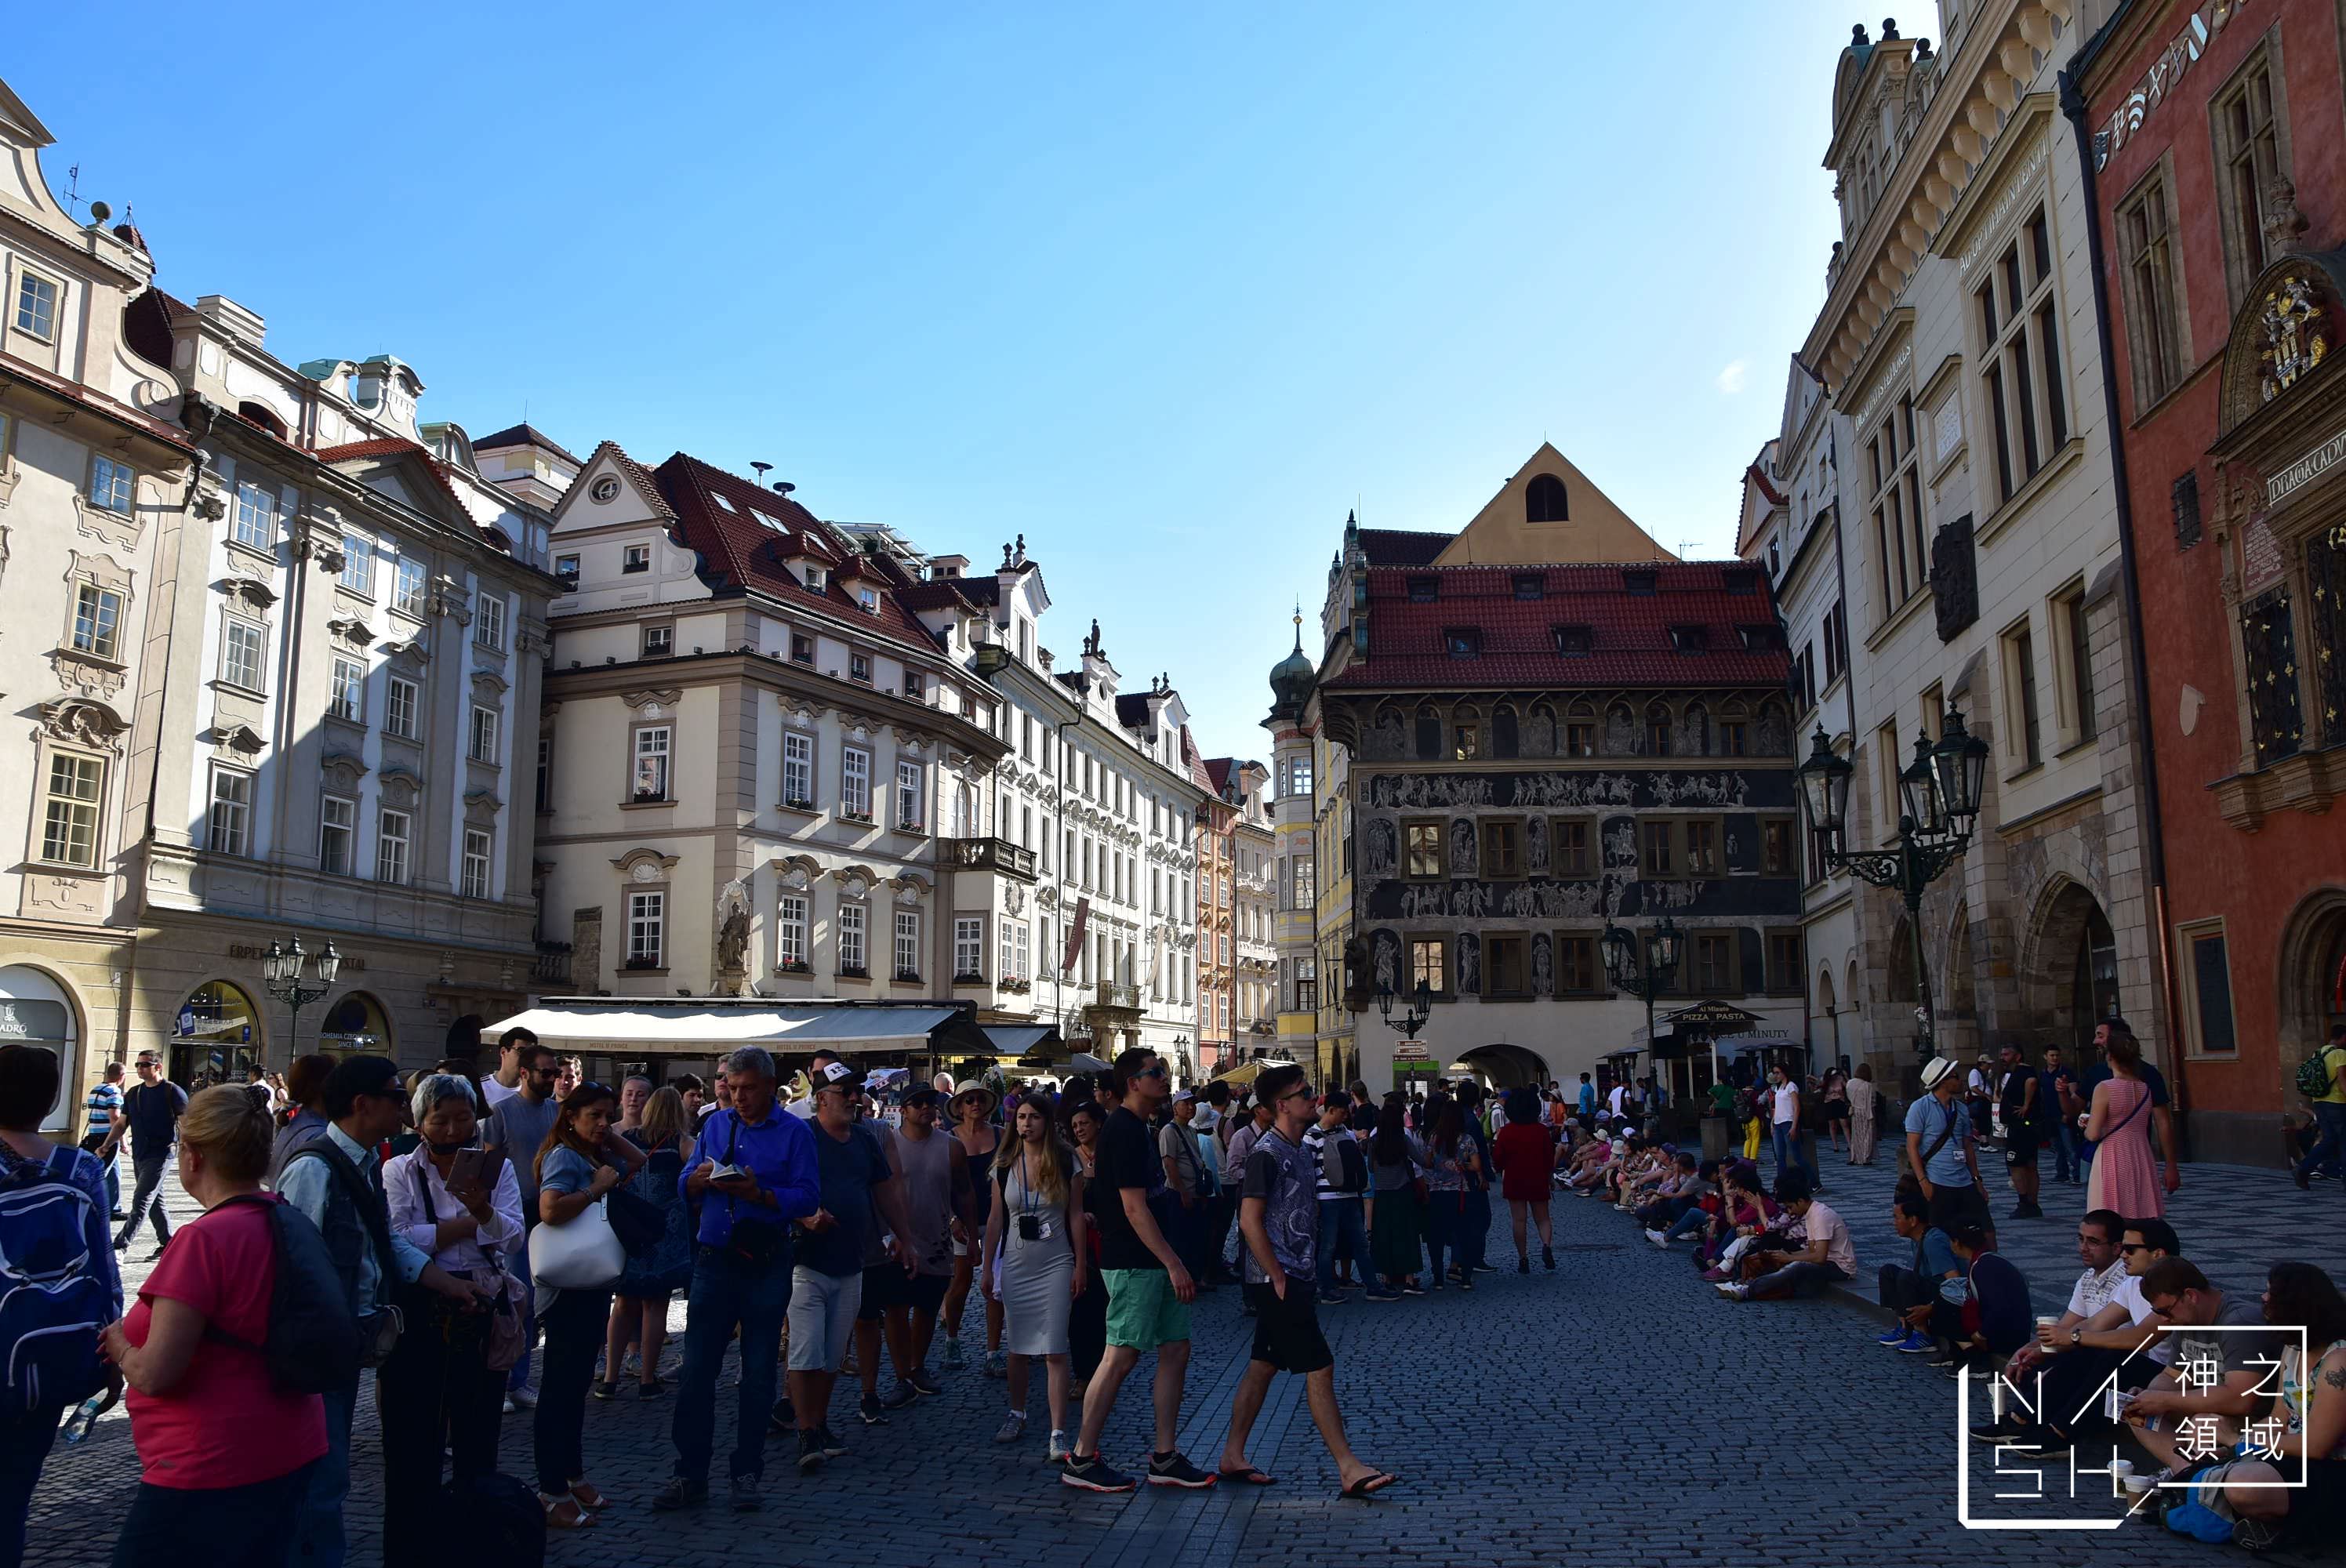 布拉格旅遊景點,布拉格地圖,布拉格一日遊,布拉格必買,布拉格換錢,布拉格,布拉格自由行,布拉格旅遊